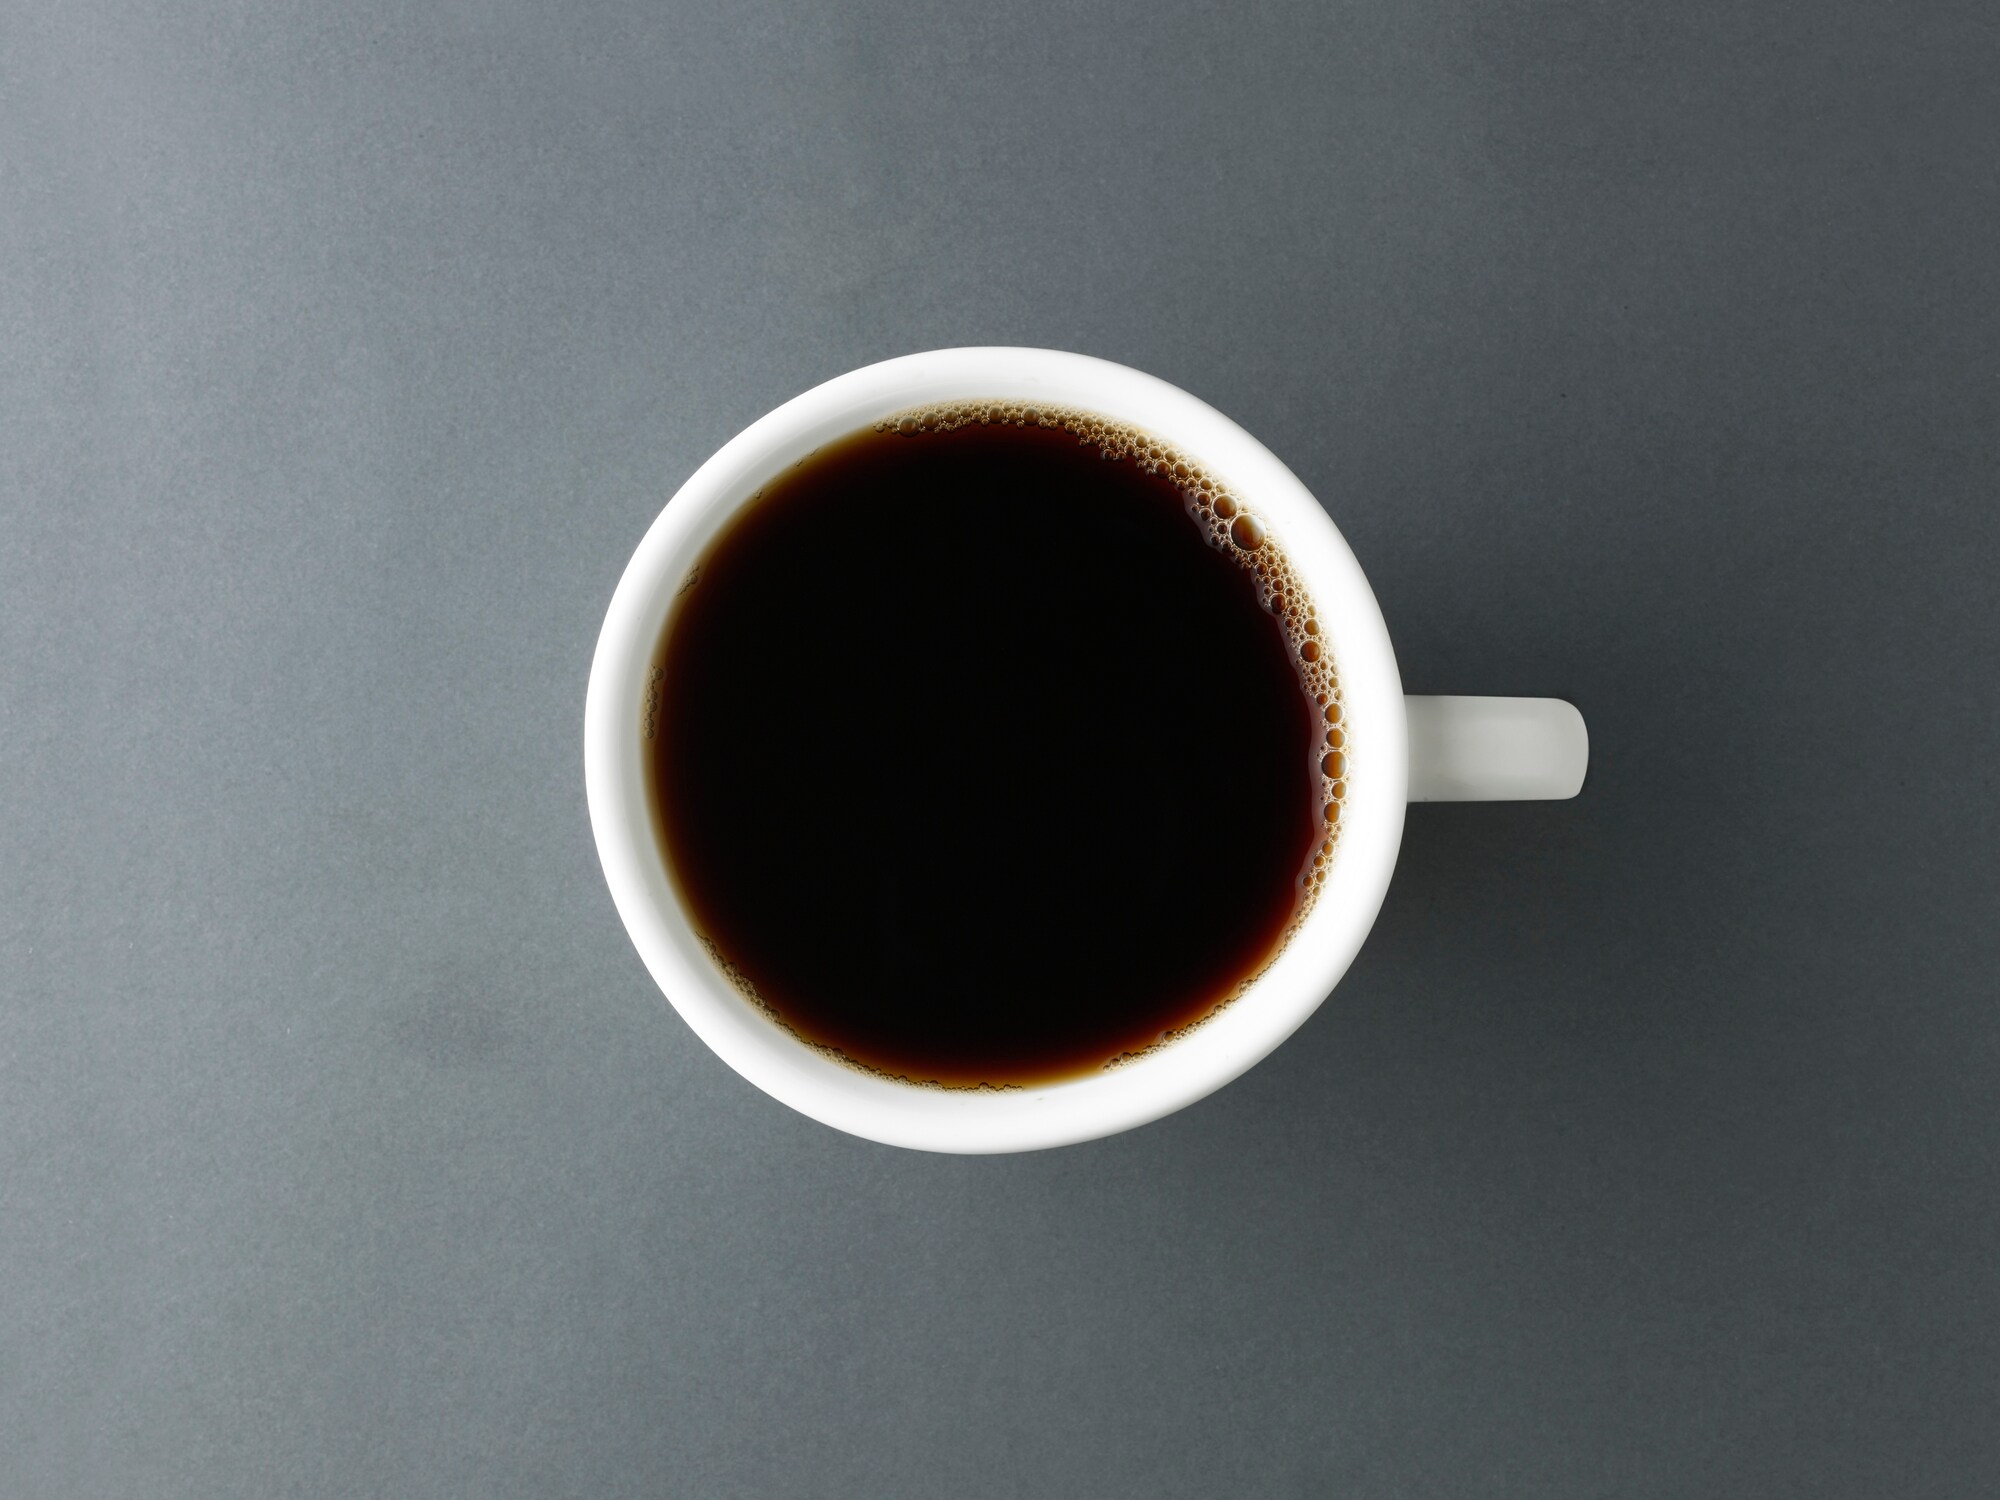 Kopjes koffie die zichzelf opwarmen? De machines die niemand ooit voor mogelijk hield